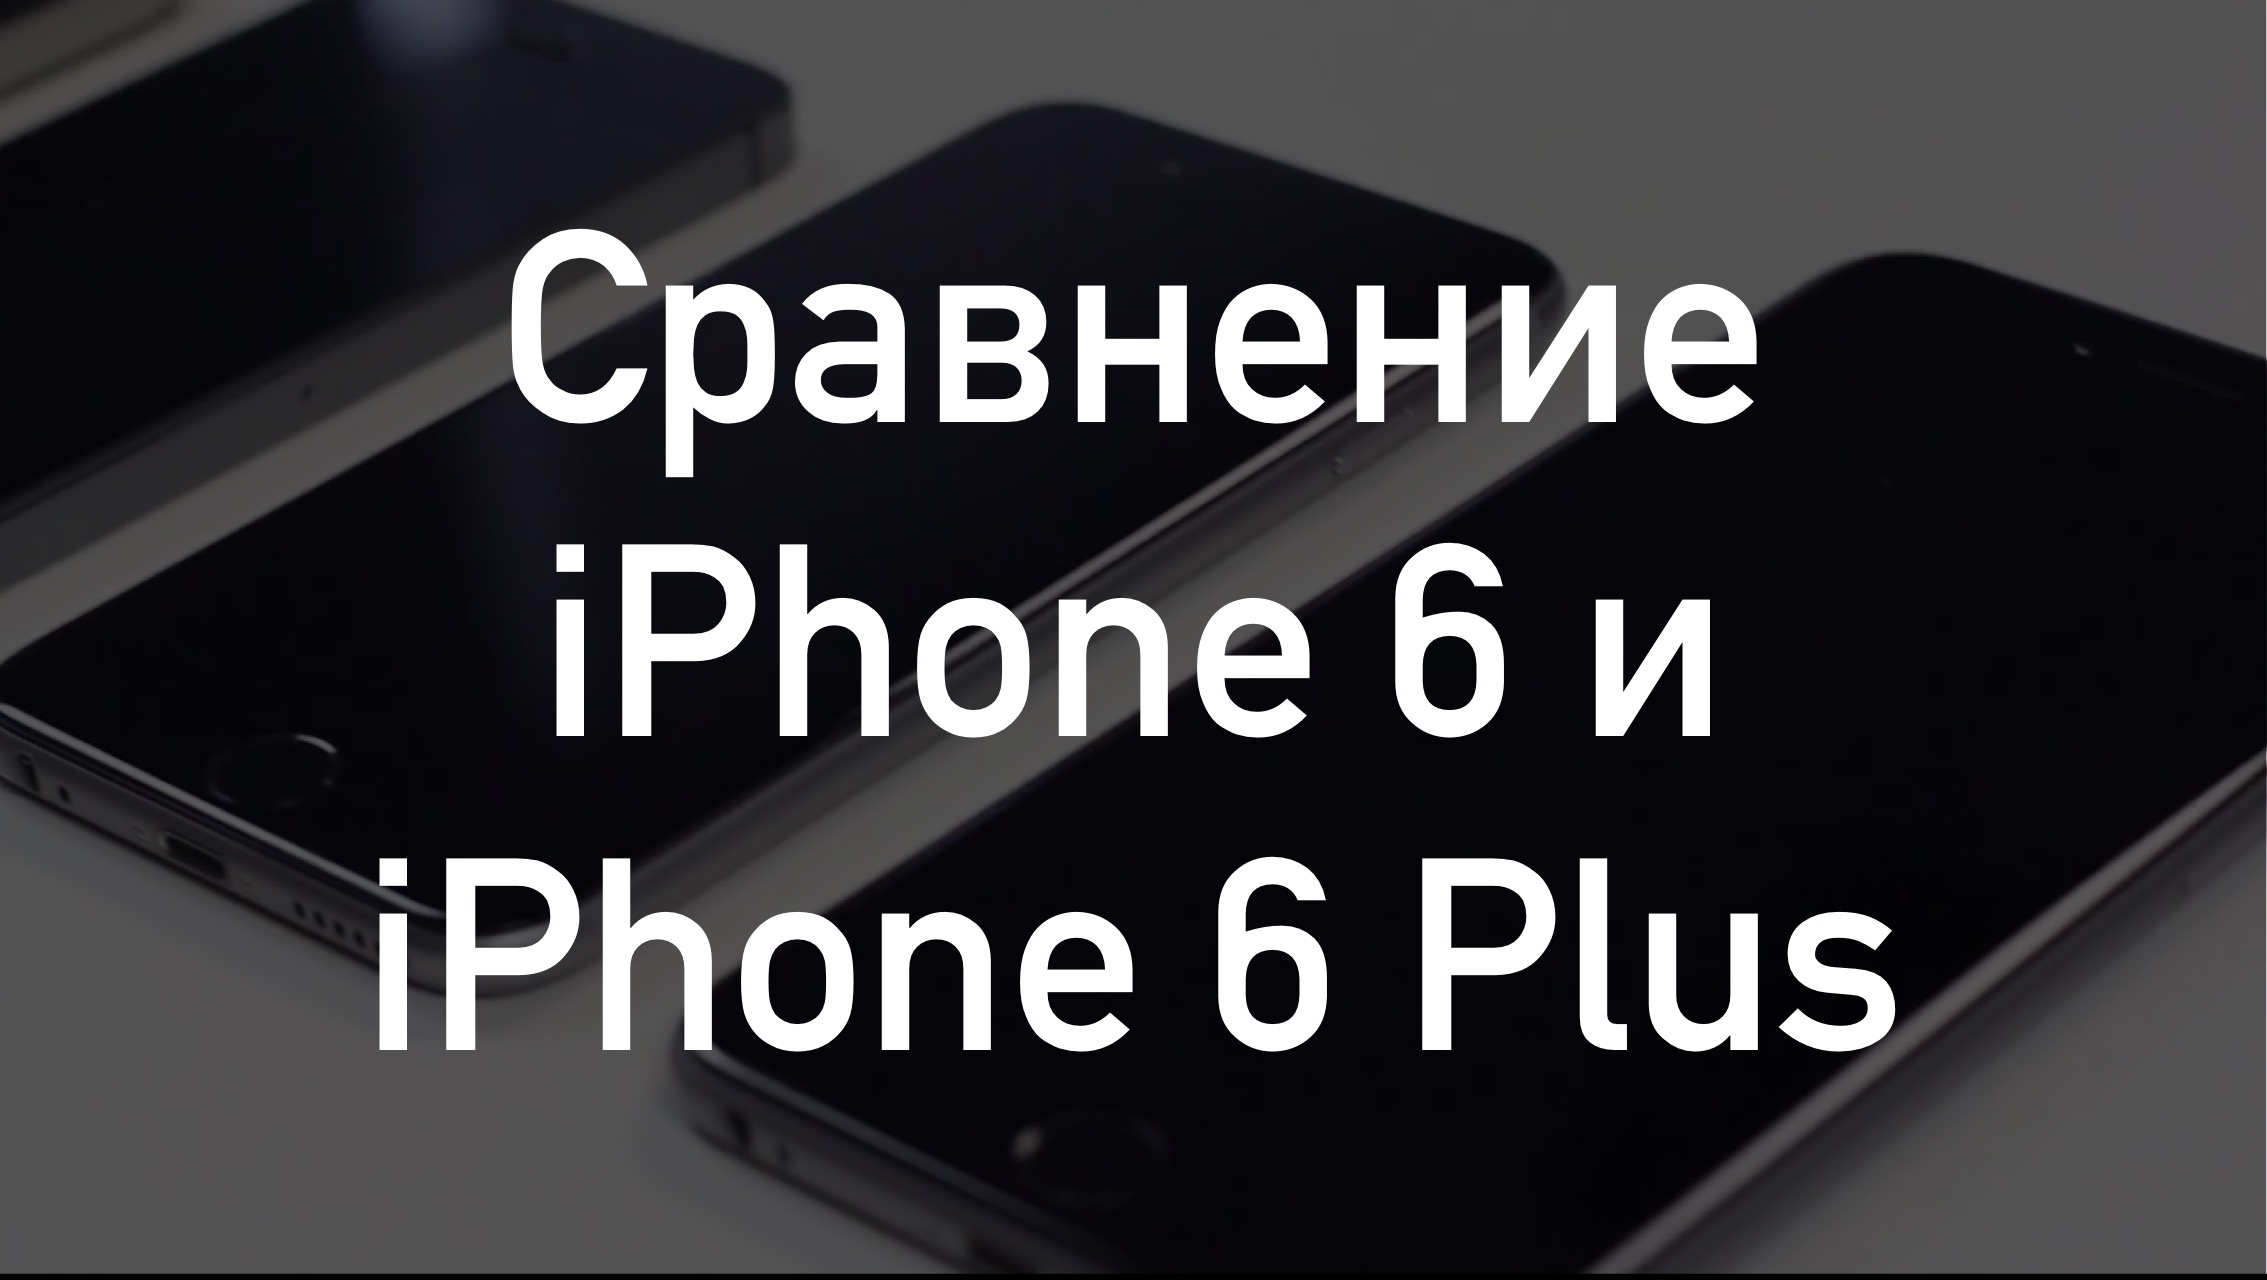 Сравнение iPhone 6 и iPhone 6 Plus